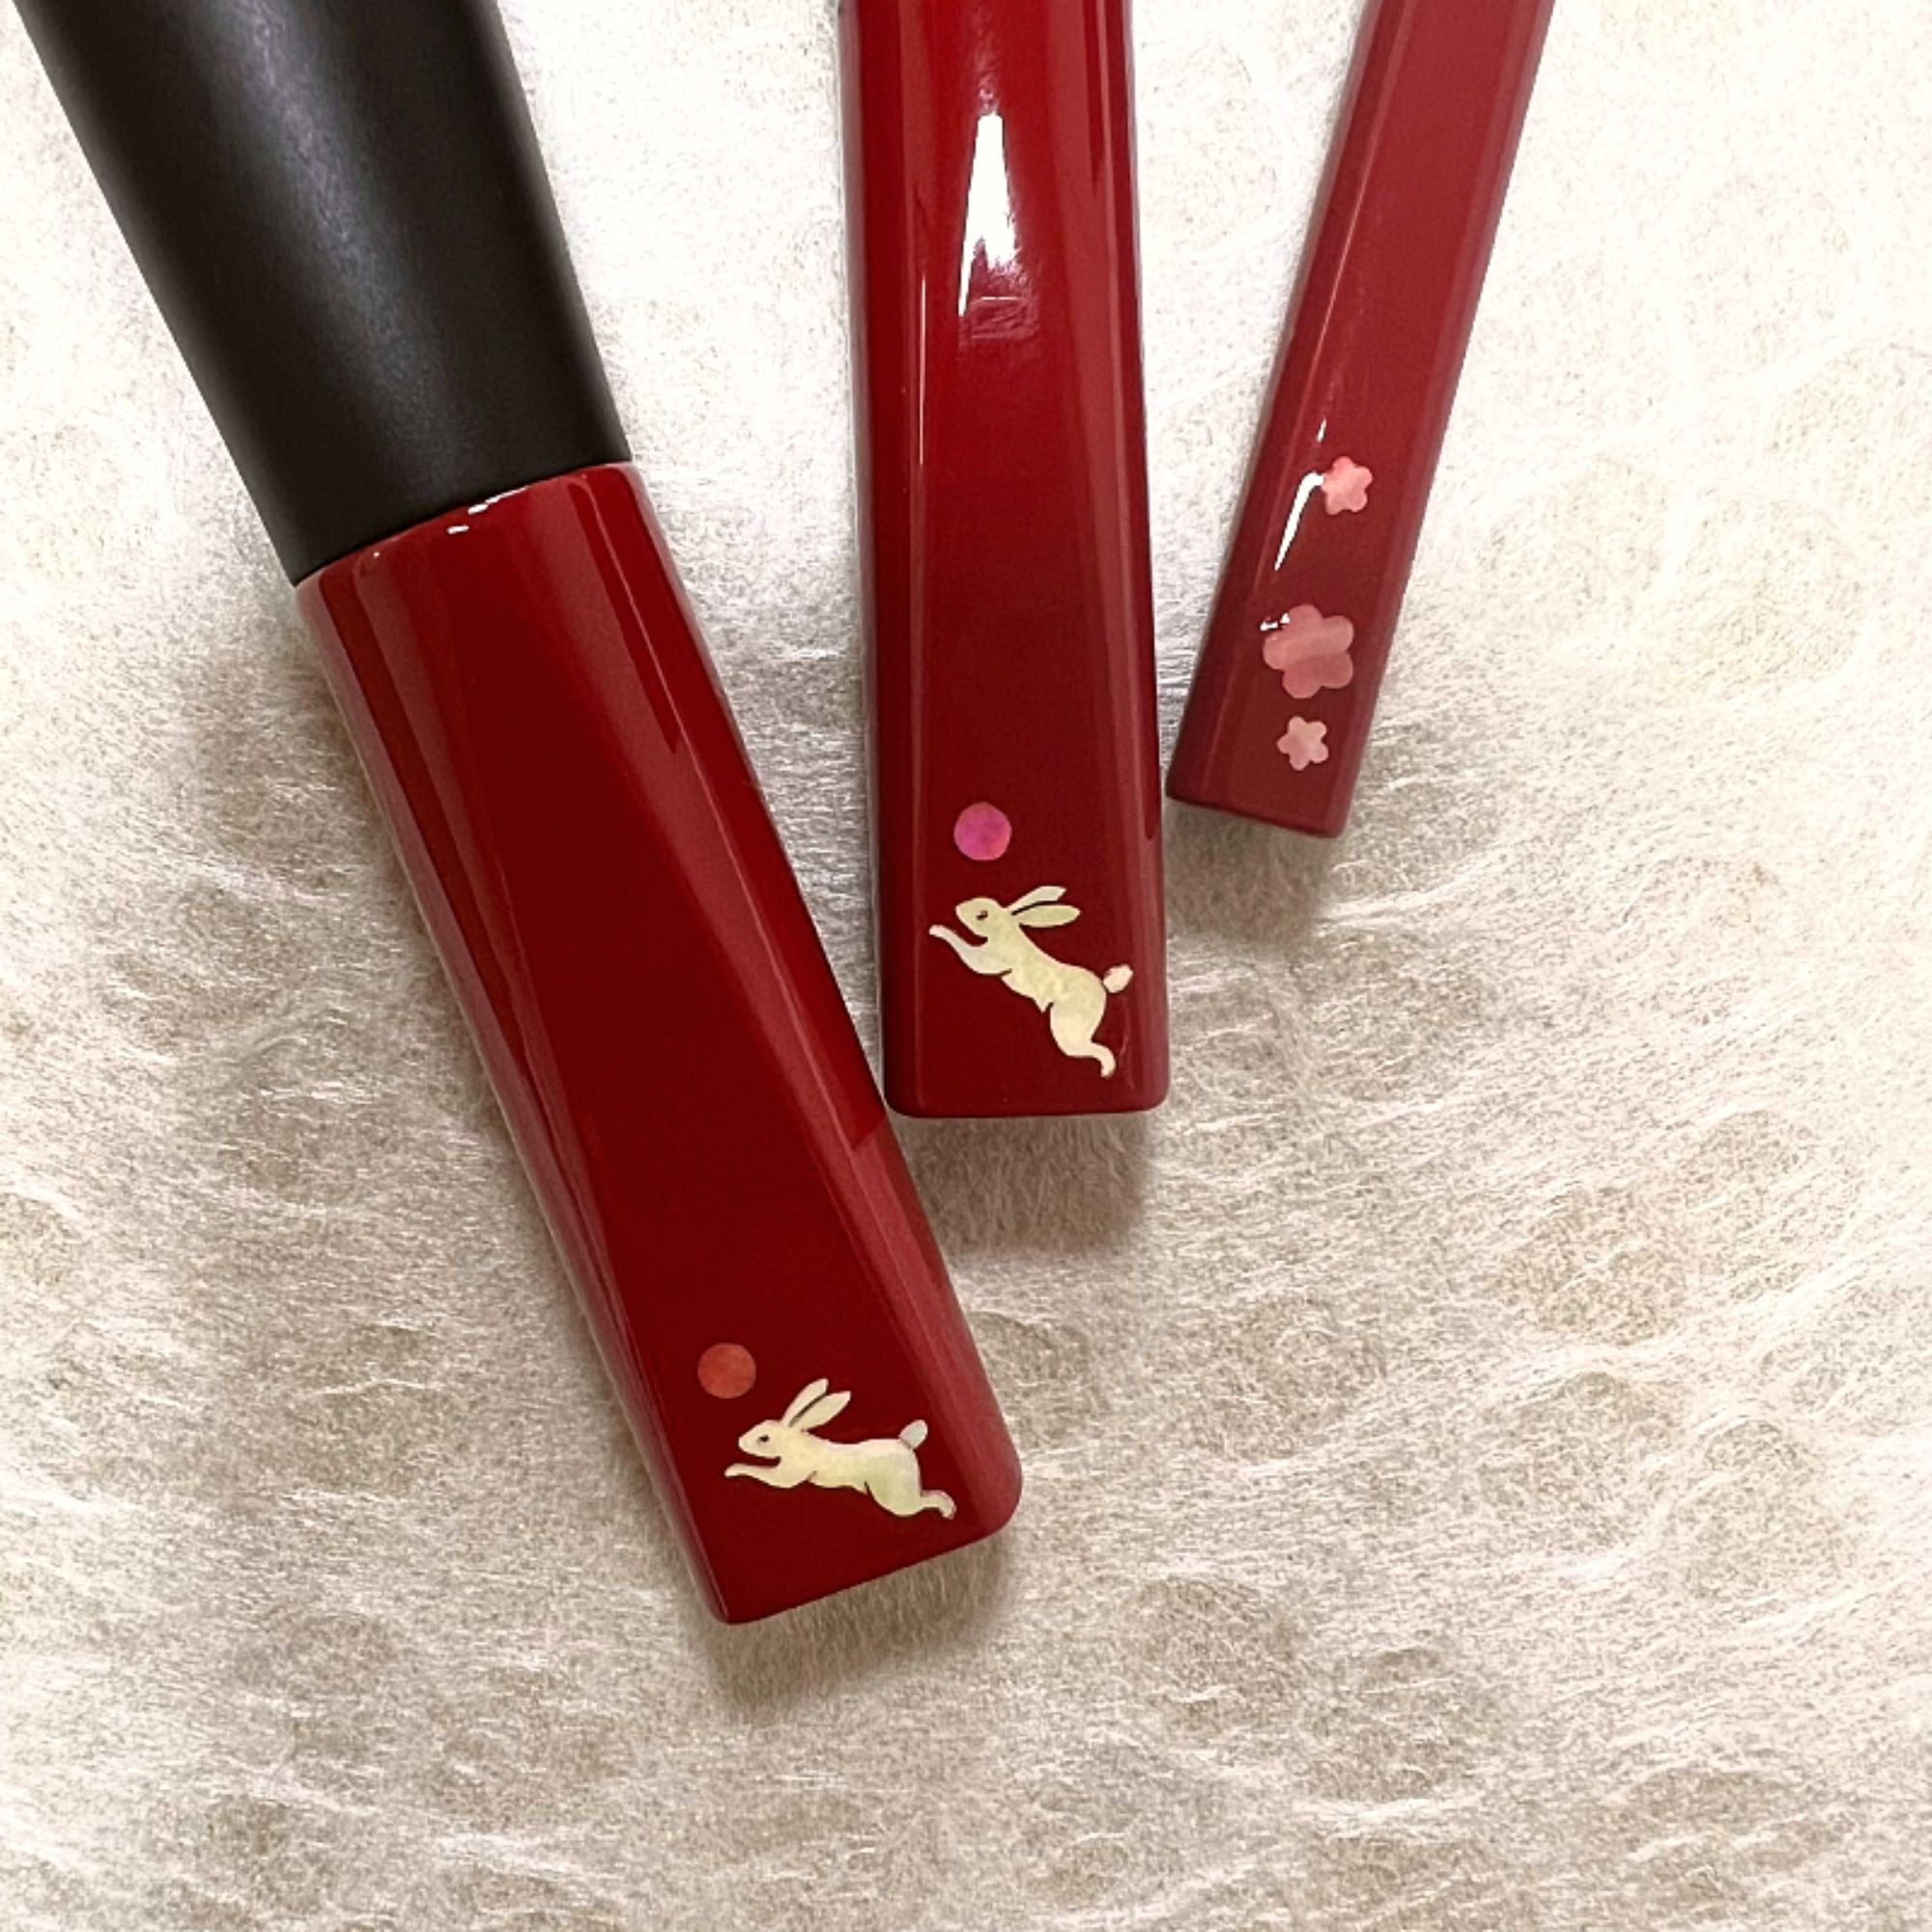 Koyudo Year of the Rabbit 3-Brush Set, Raden Design (Limited Edition) - Fude Beauty, Japanese Makeup Brushes